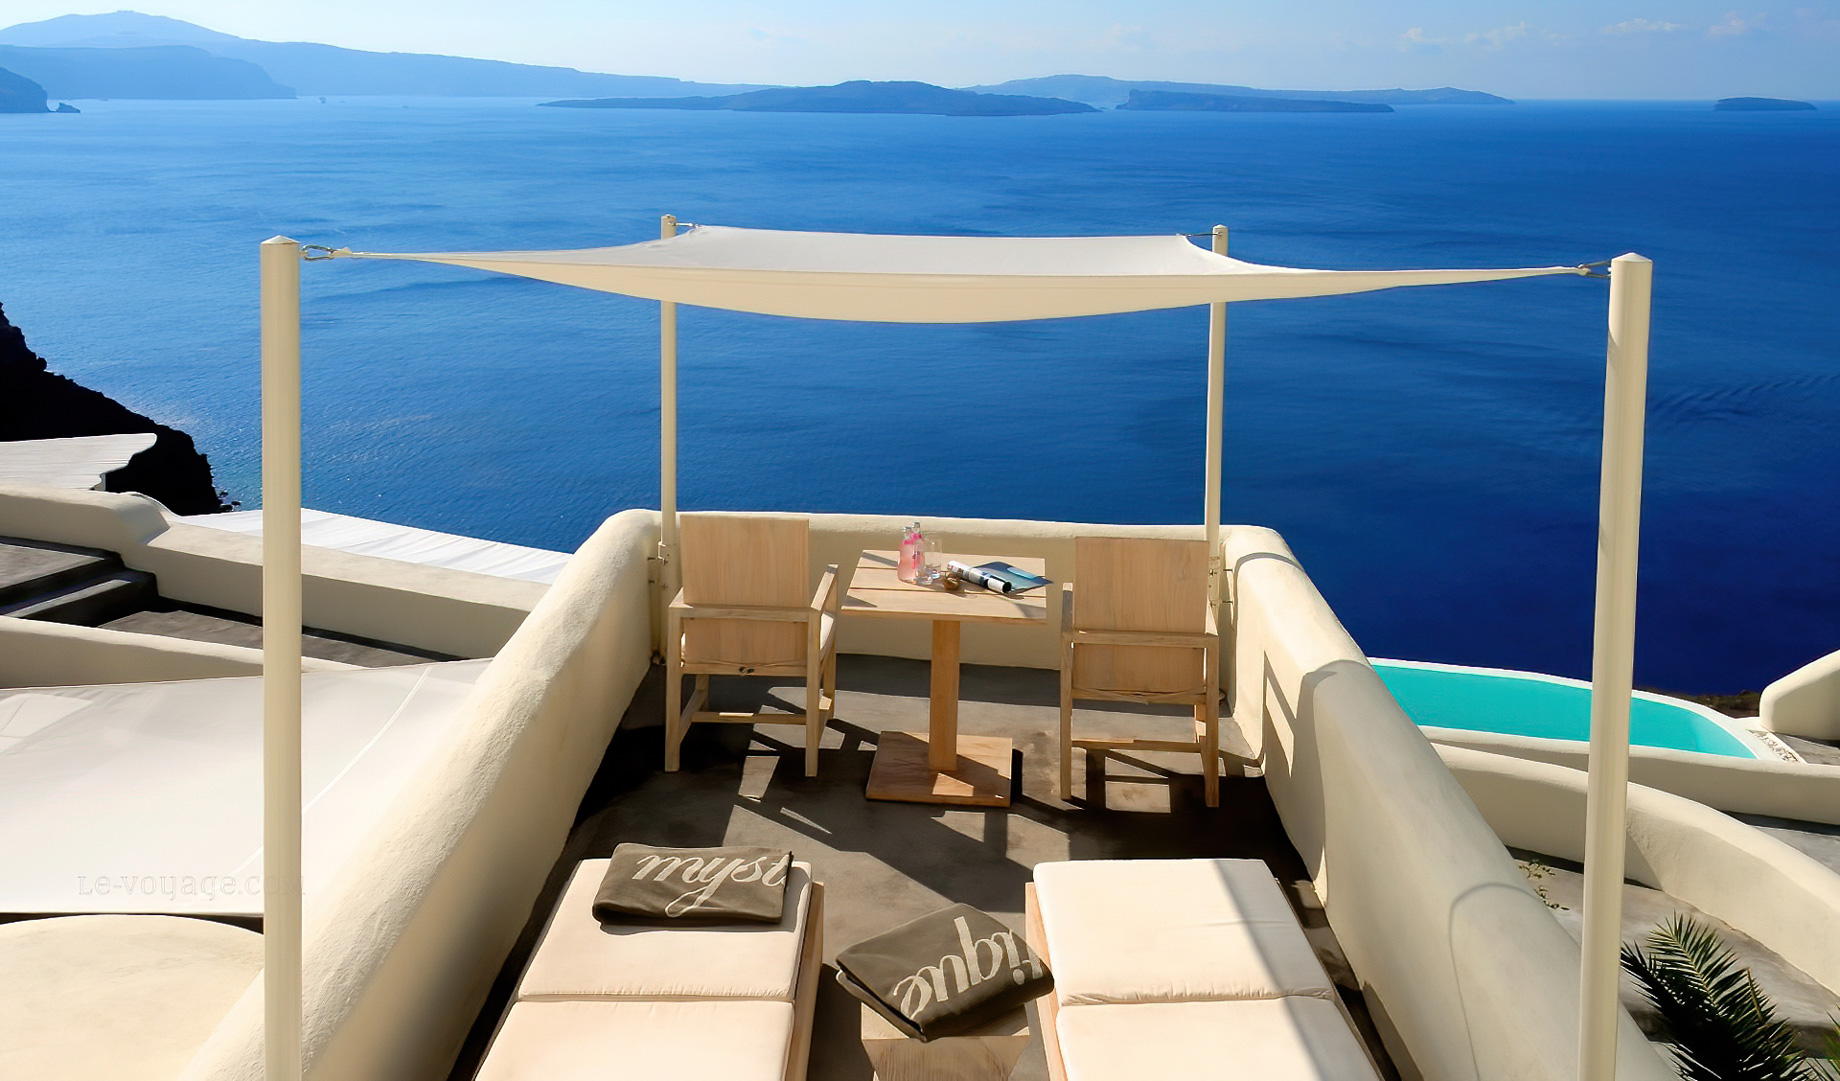 Mystique Hotel Santorini – Oia, Santorini Island, Greece – Oceanview Deck